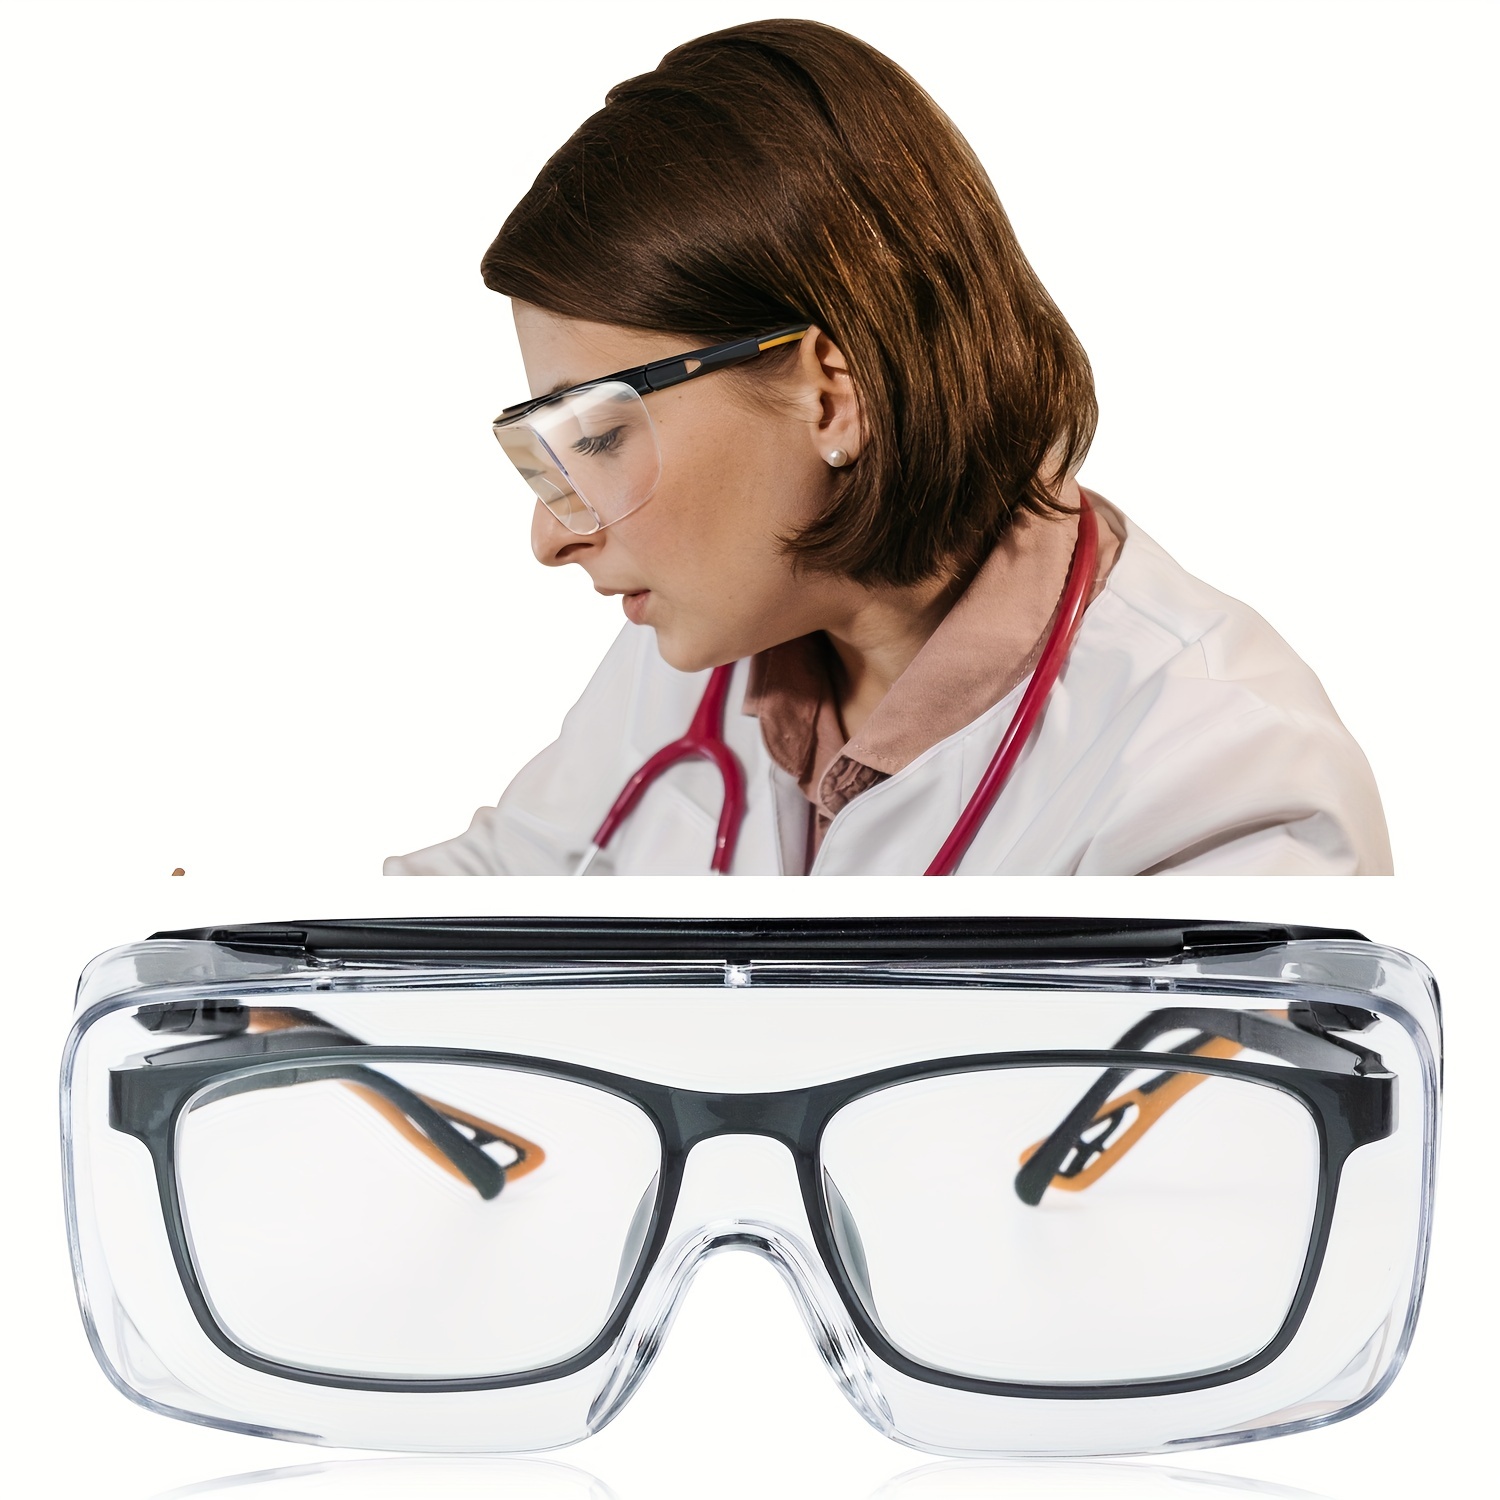 Gafas protectoras de seguridad, protección ocular suave y transparente,  antiniebla, se adaptan sobre los lentes, perfectos para construcción, tiro